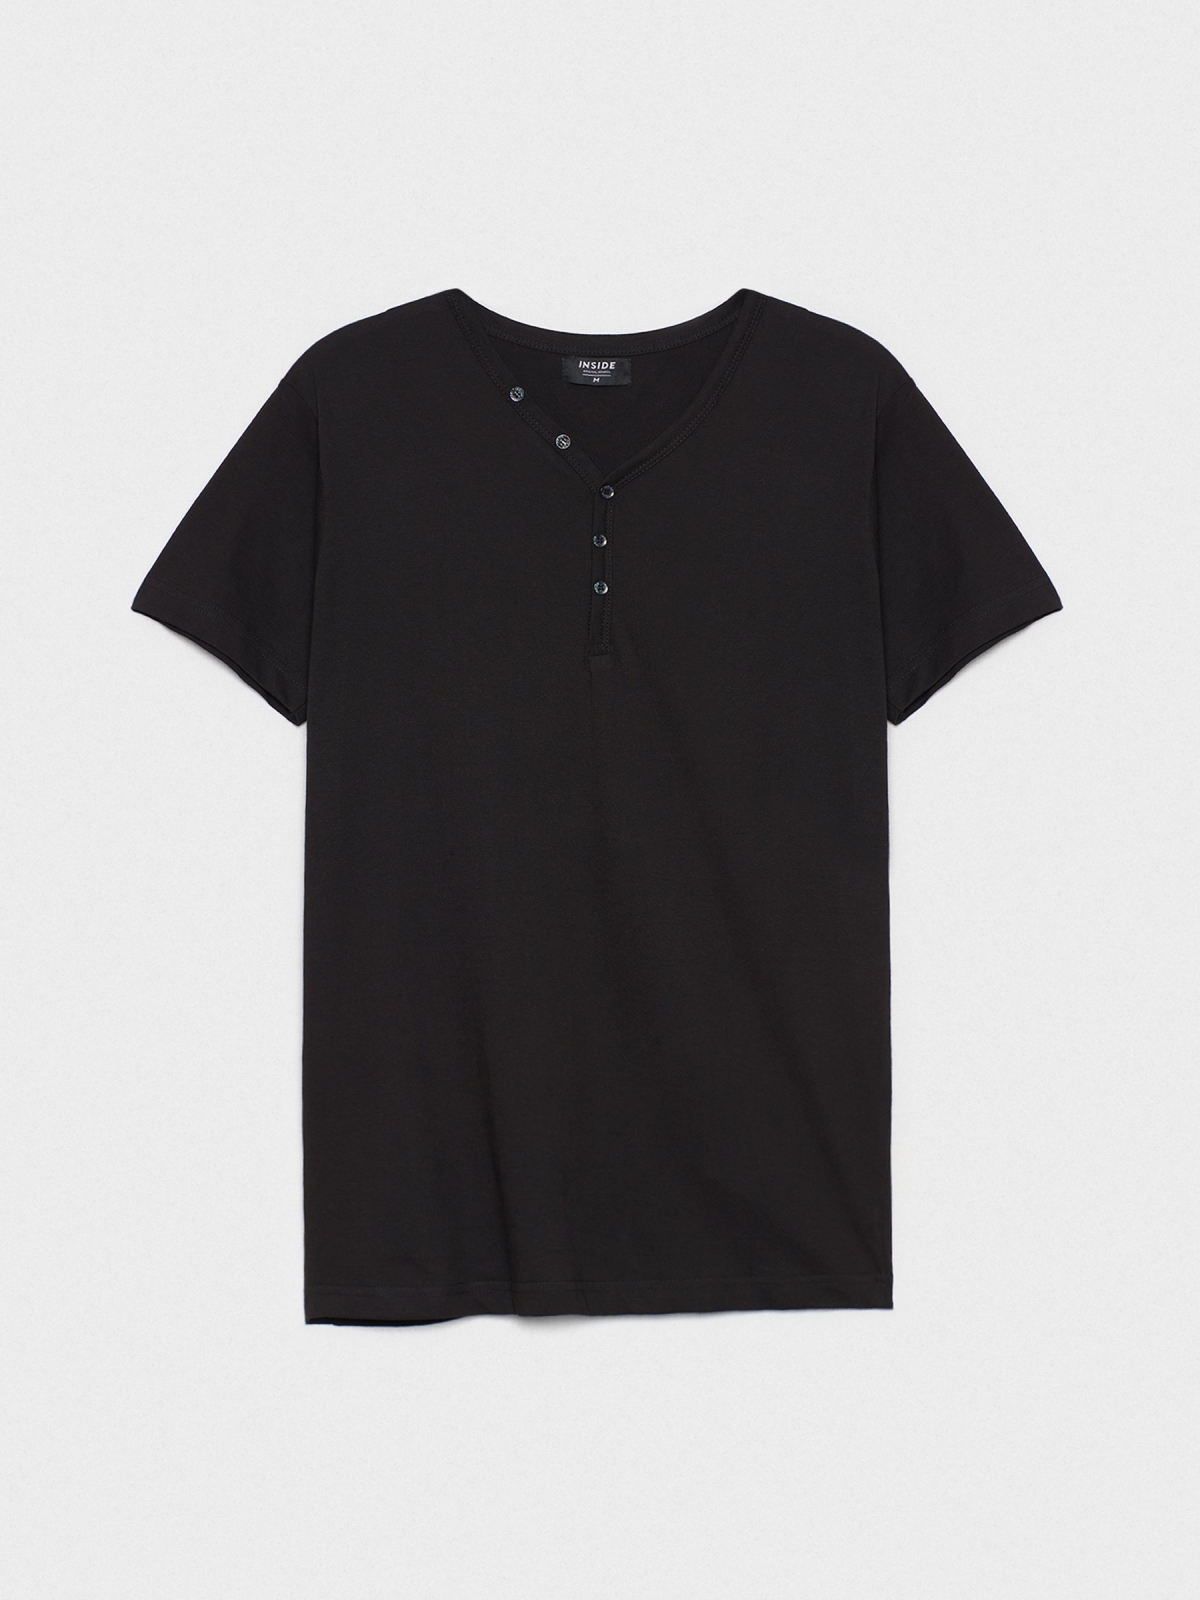  T-shirt gola com botões preto